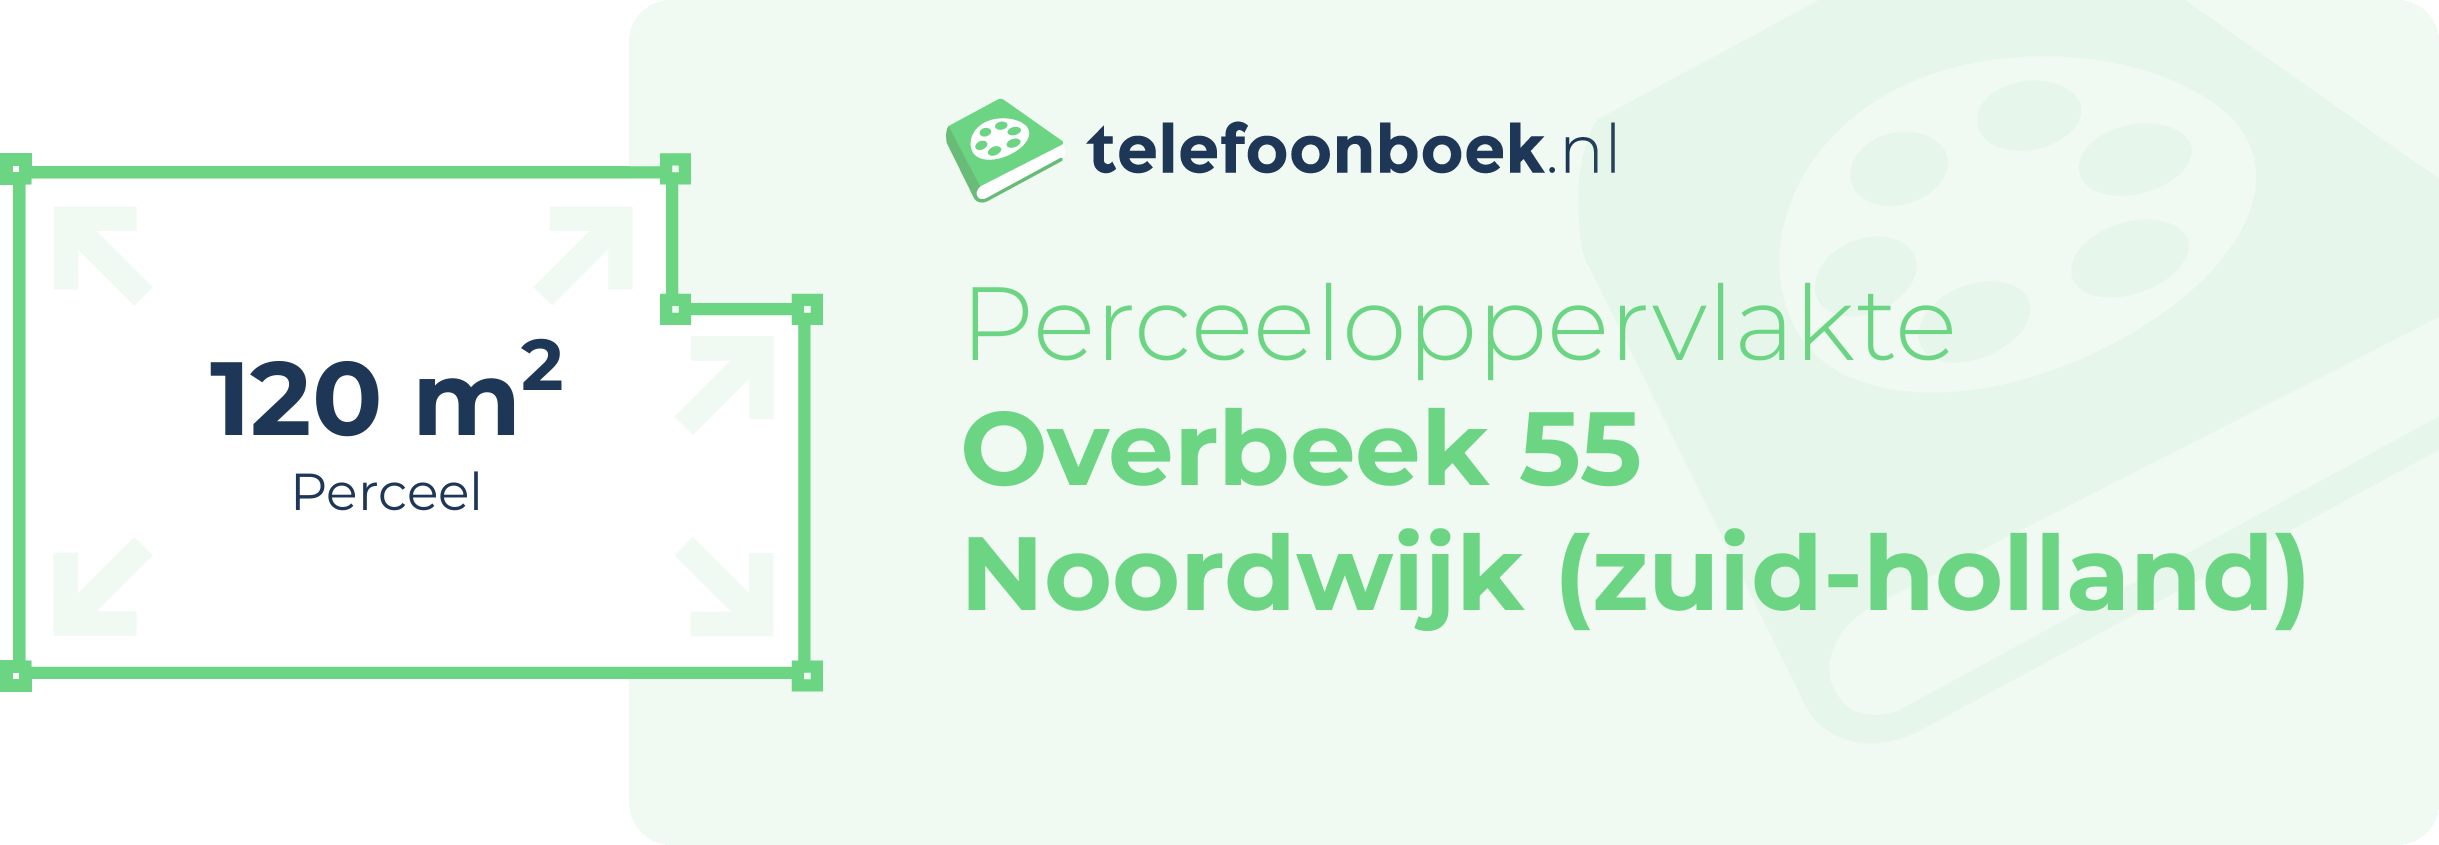 Perceeloppervlakte Overbeek 55 Noordwijk (Zuid-Holland)